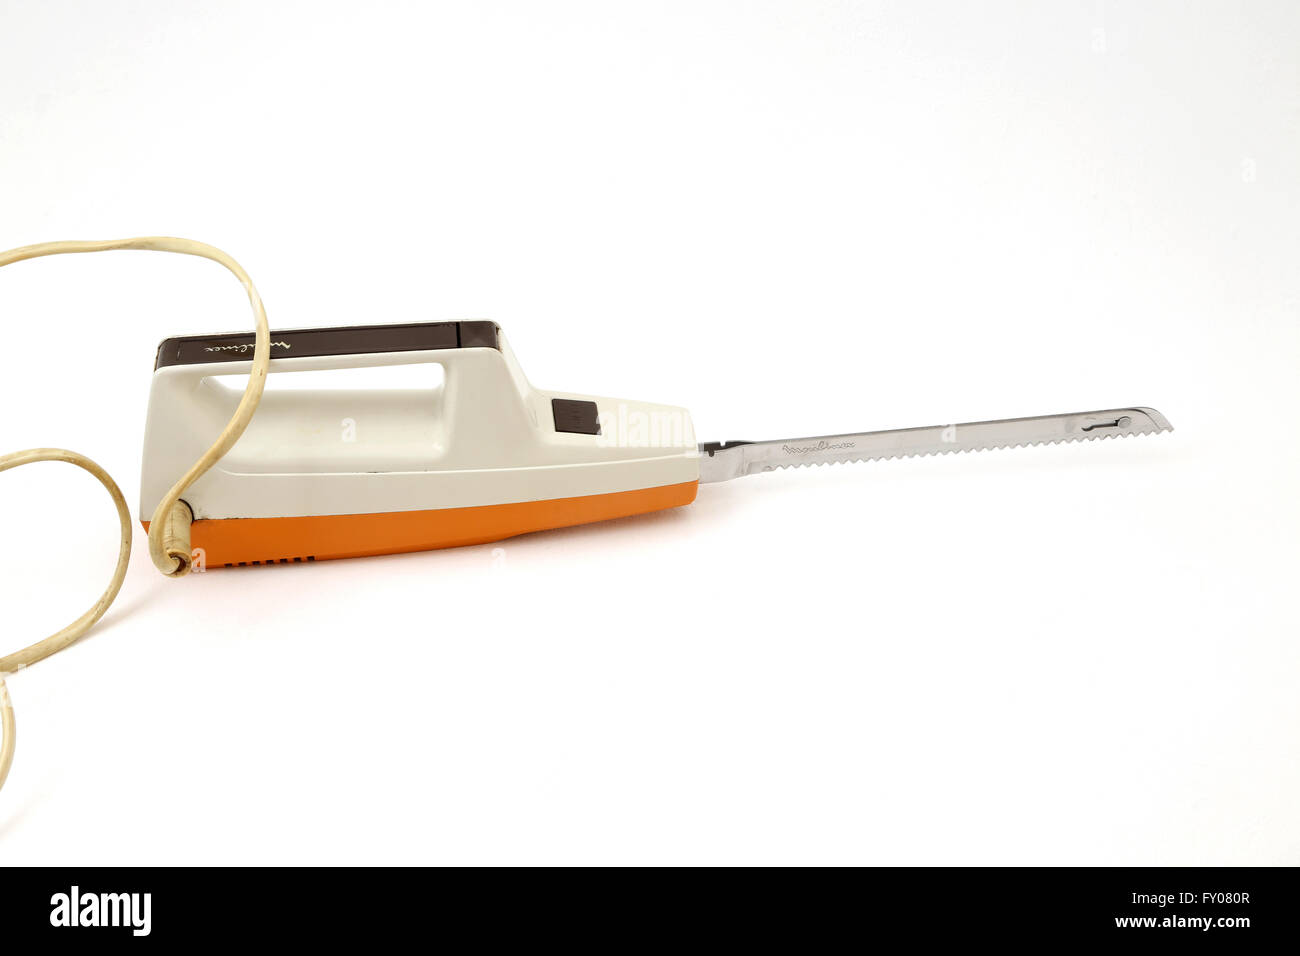 Couteau électrique Moulinex vintage 70 orange avec plateau de